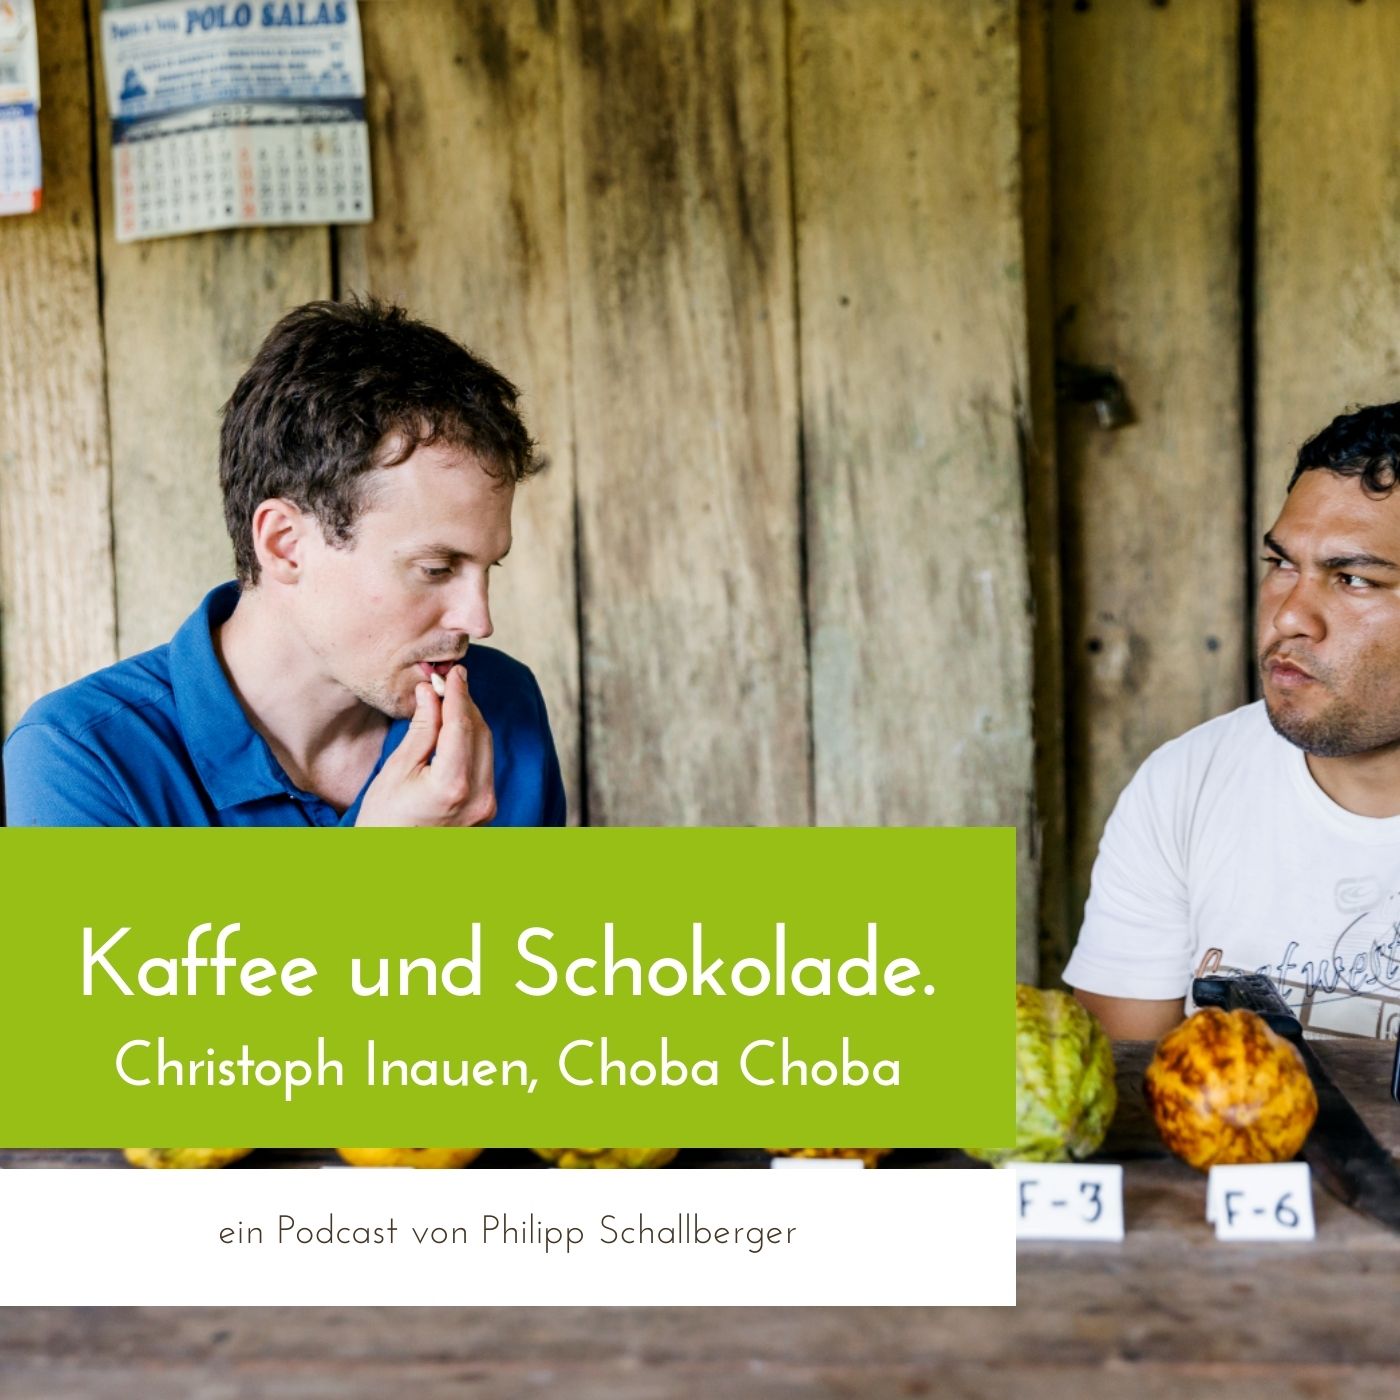 Schokolade und Kaffee. Podcast mit Christoph Inauen von Choba Choba